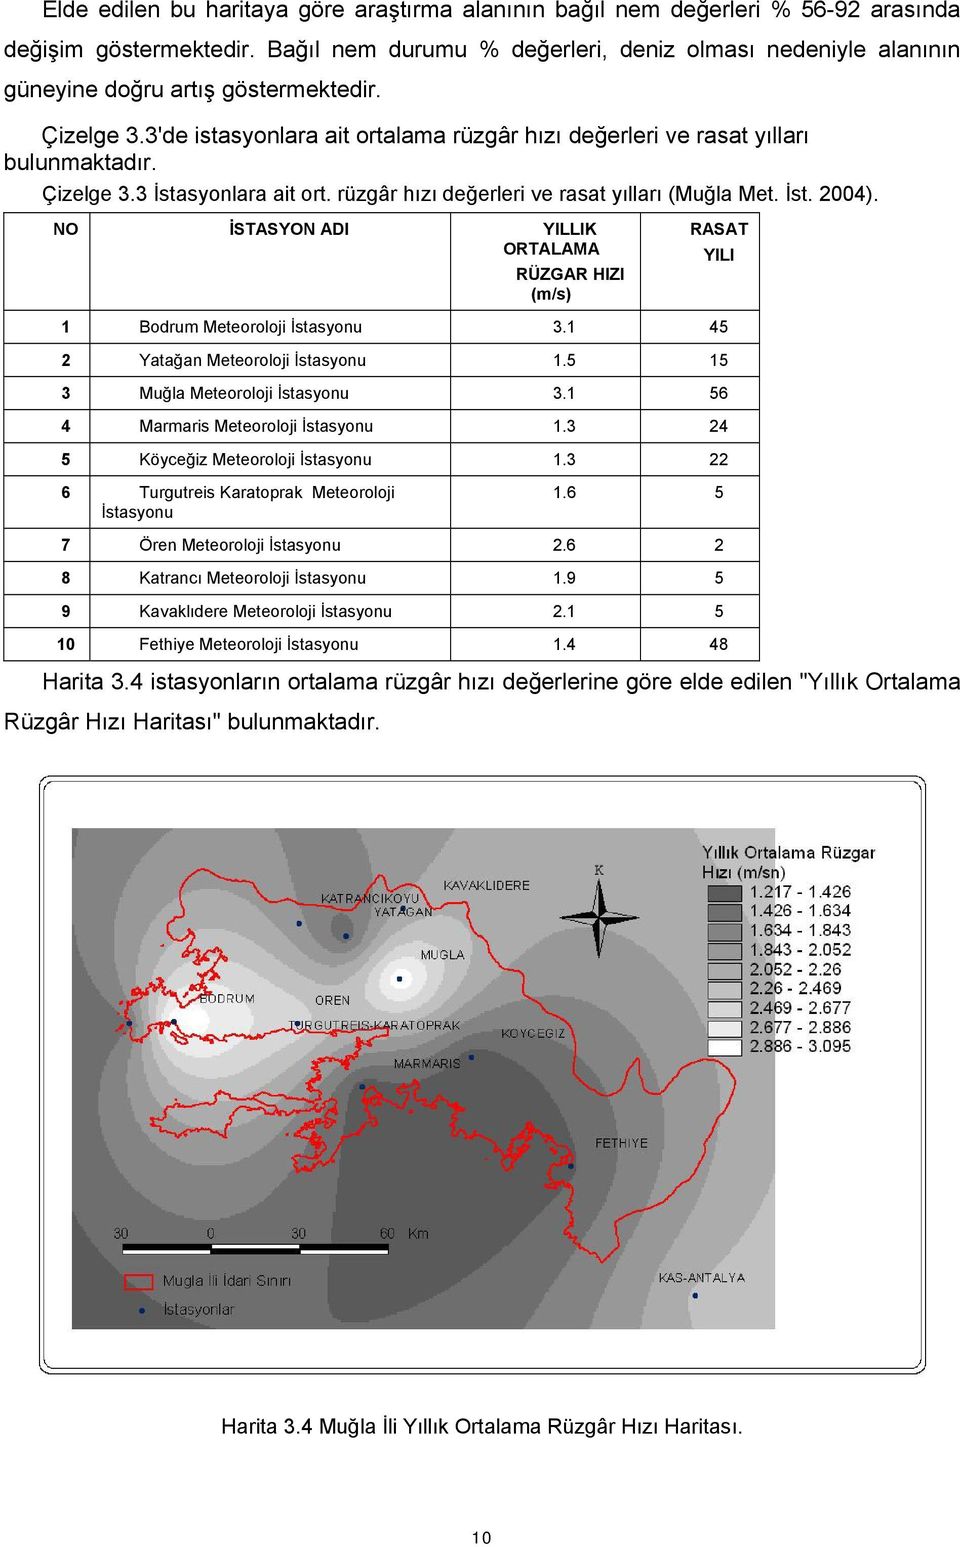 Çizelge 3.3 İstasyonlara ait ort. rüzgâr hızı değerleri ve rasat yılları (Muğla Met. İst. 2004). NO İSTASYON ADI YILLIK ORTALAMA RÜZGAR HIZI (m/s) RASAT YILI 1 Bodrum Meteoroloji İstasyonu 3.